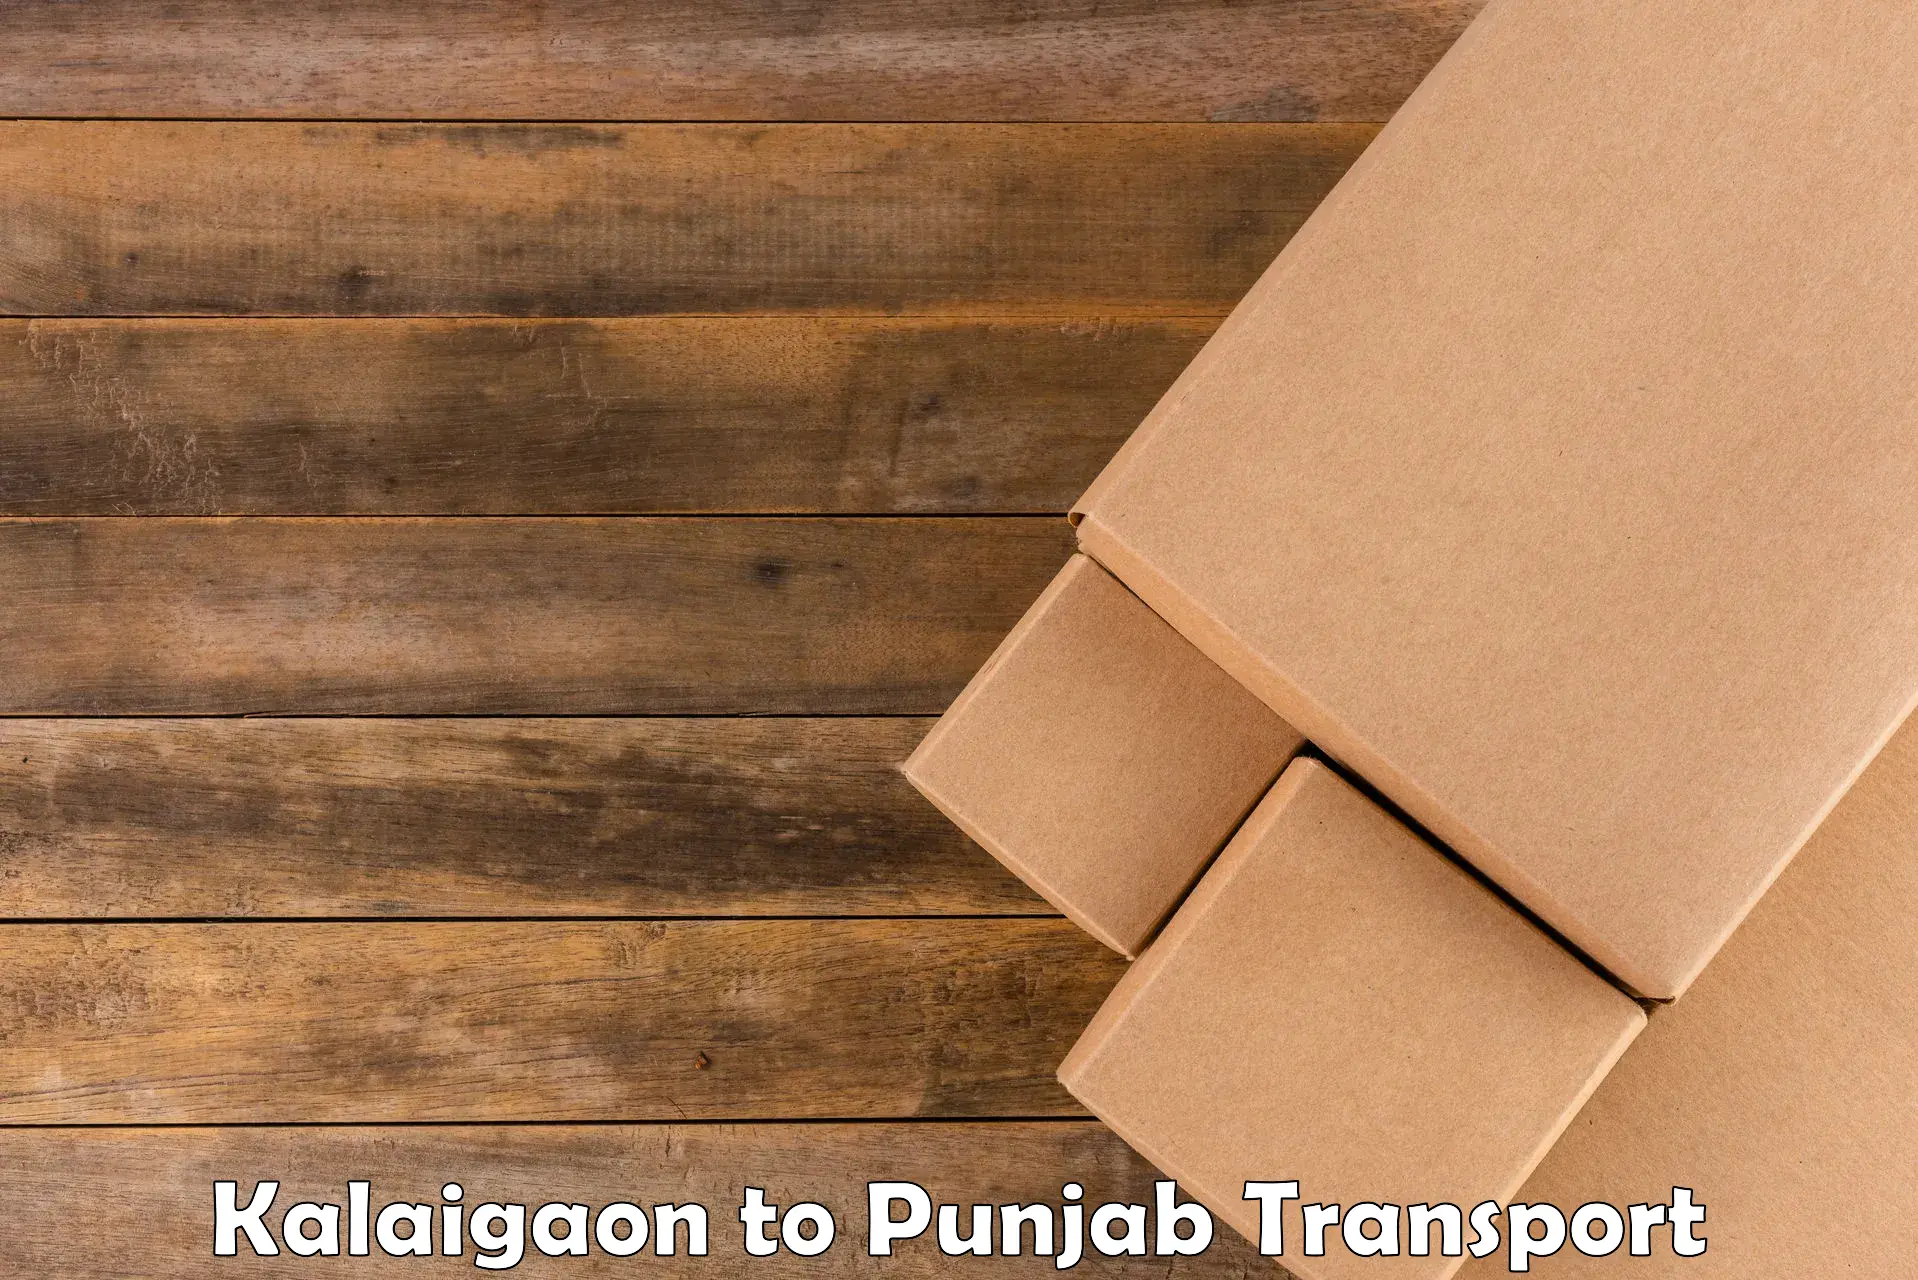 Cargo transportation services Kalaigaon to Punjab